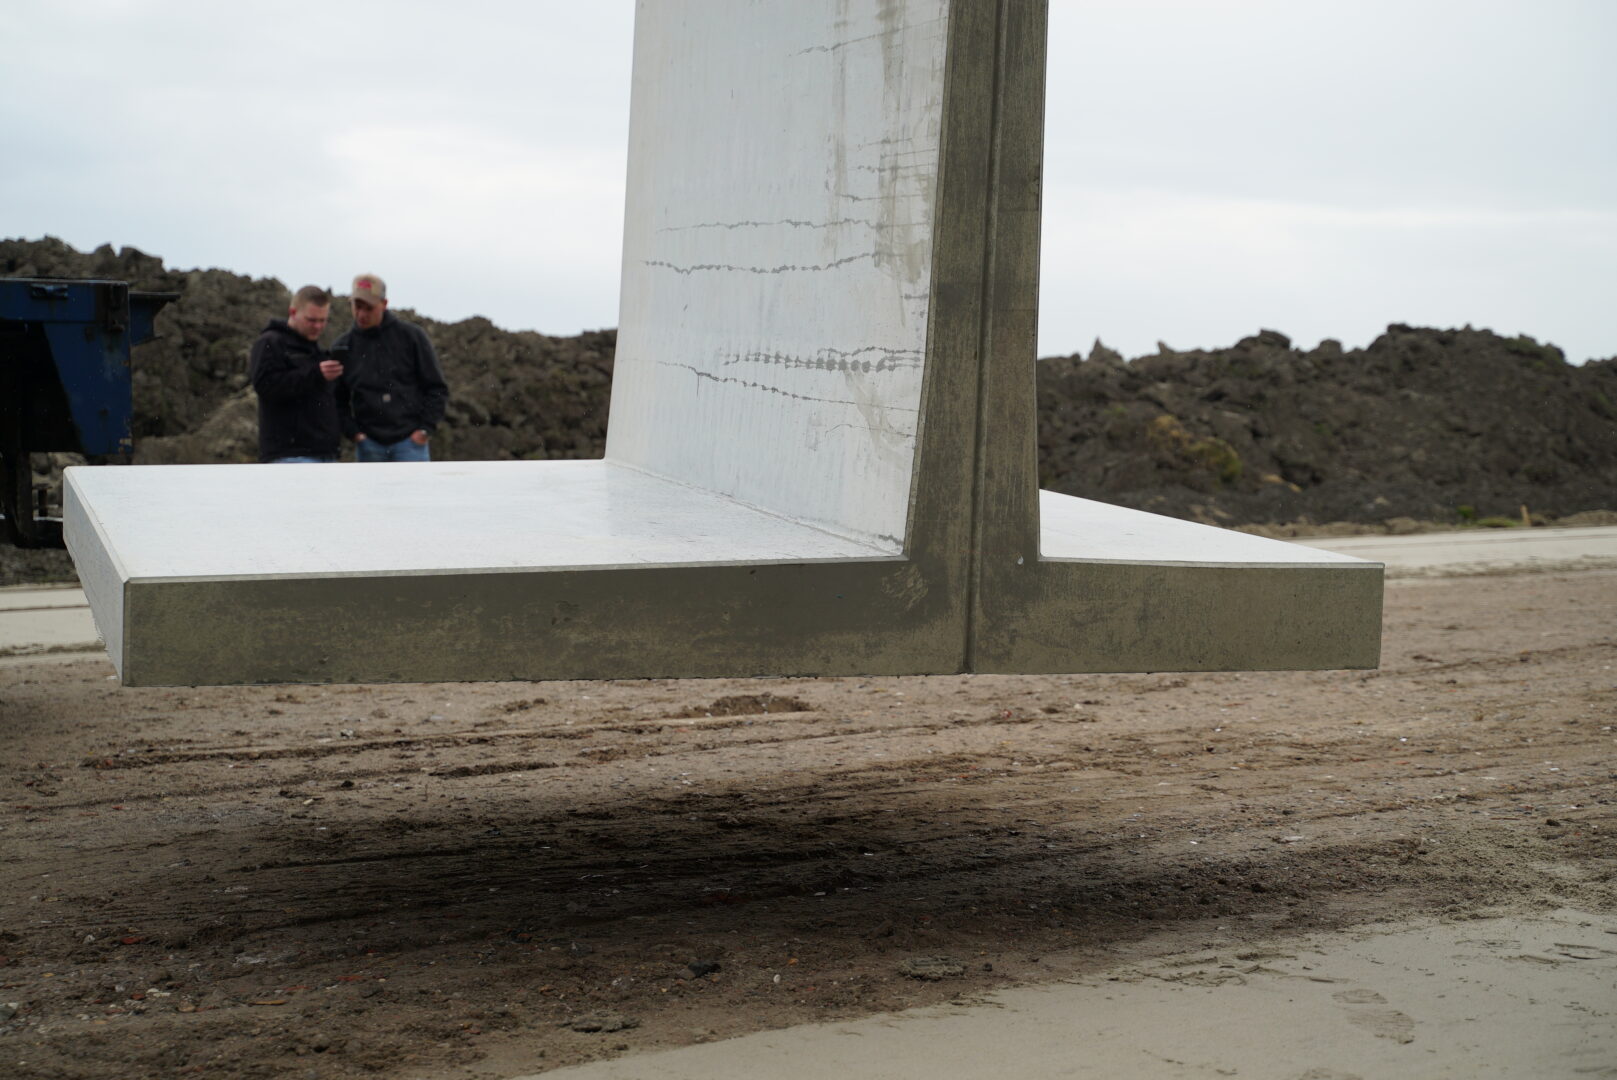 Bosch Beton - Sleufsilo van keerwanden met extra lange hak voor afdeksysteem in Blessum